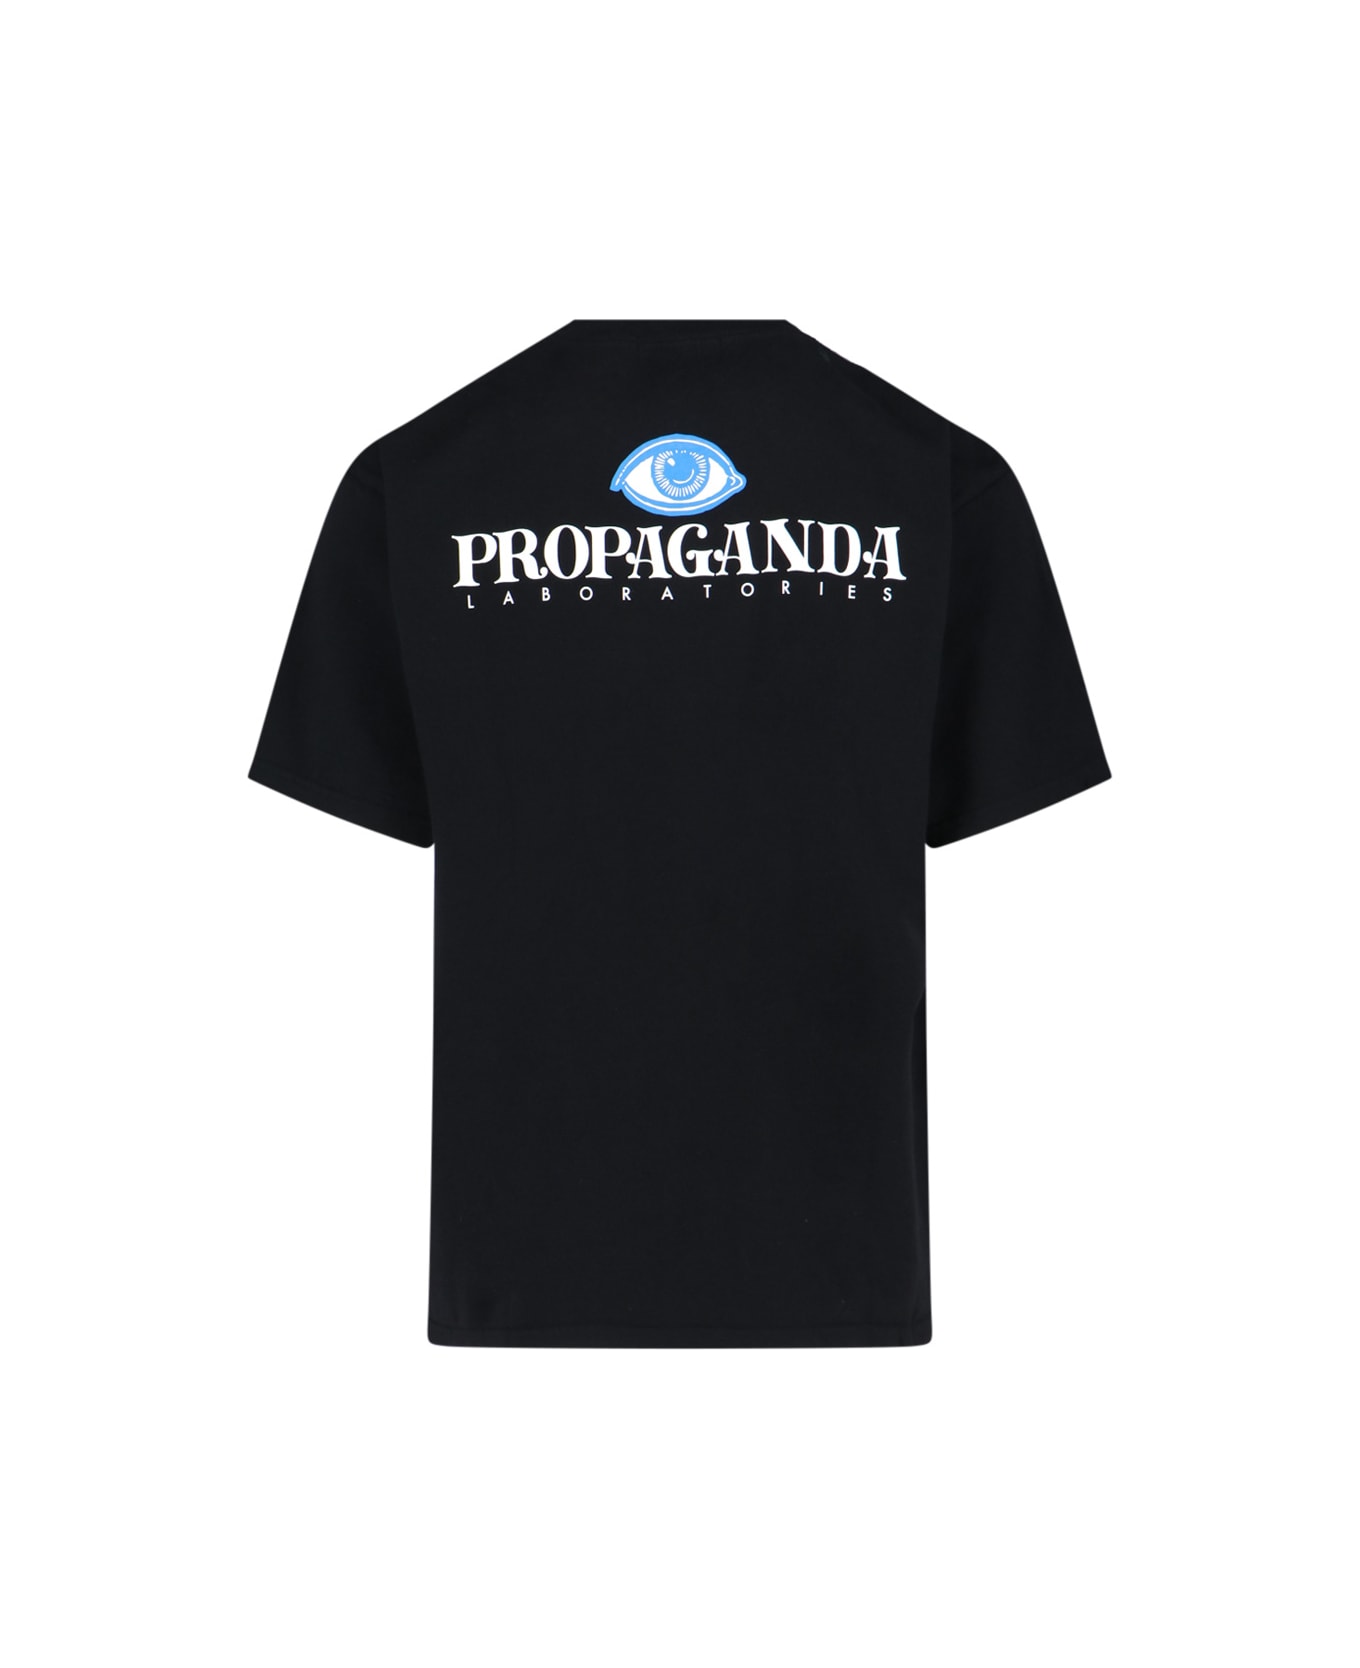 Undercover Jun Takahashi 'propaganda' T-shirt - Black  